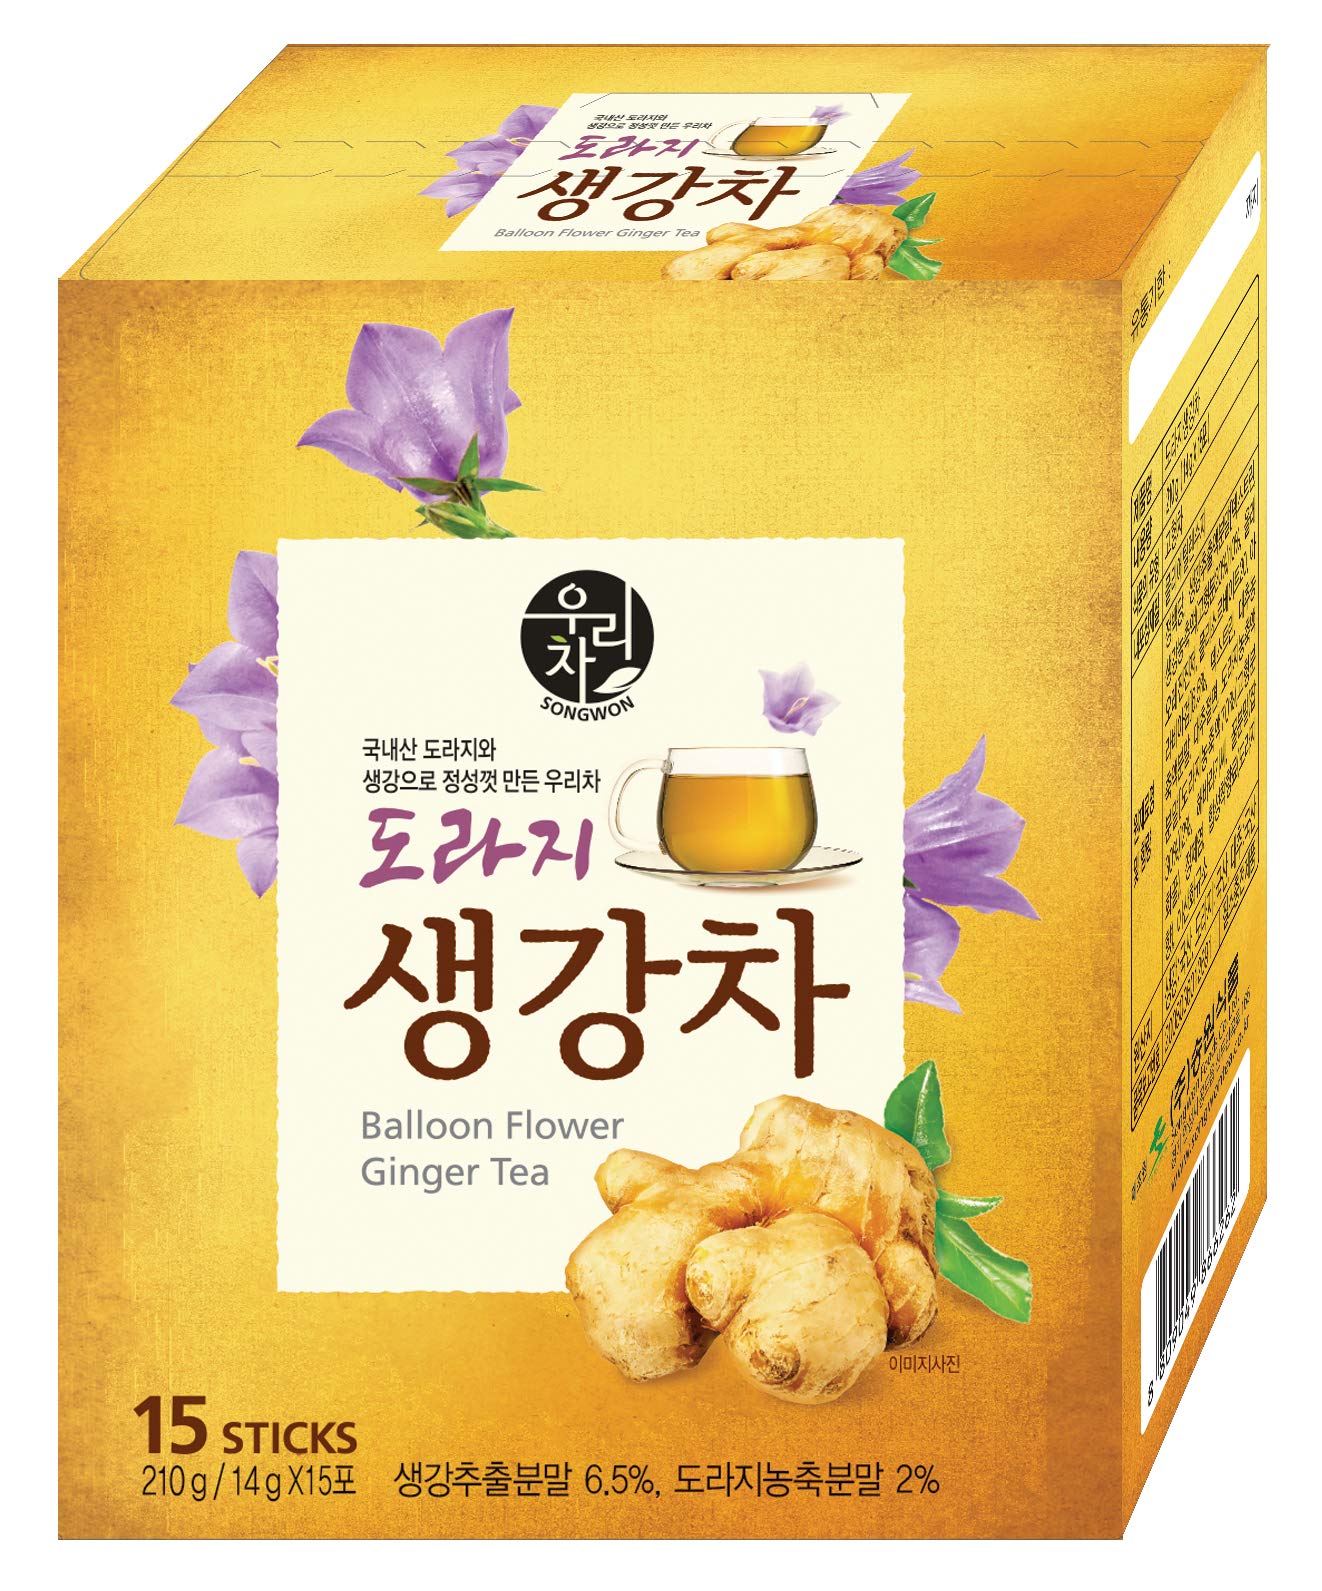 Songwon Balloon Flower Ginger Tea